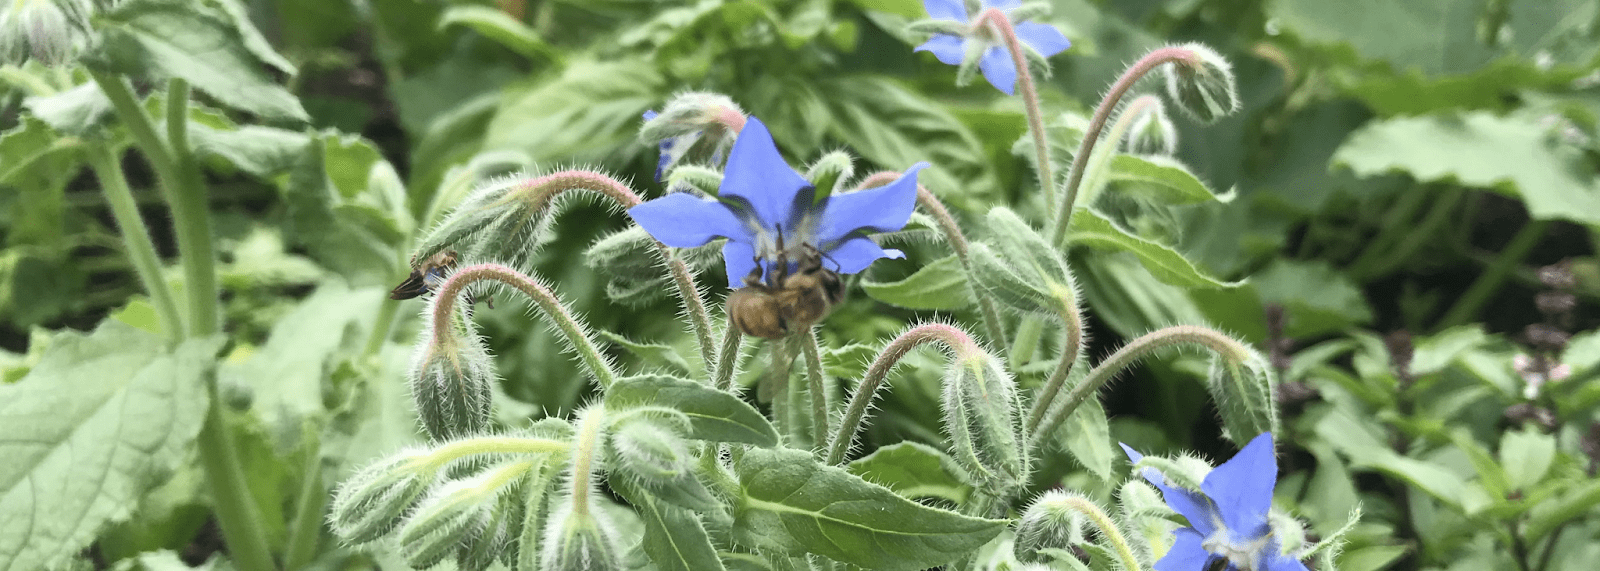 Obraz przedstawiający niebieskofioletowy kwiat pomniejszony w dół o szerokości nagłówka. Pszczoła jest prawie niewidoczna.